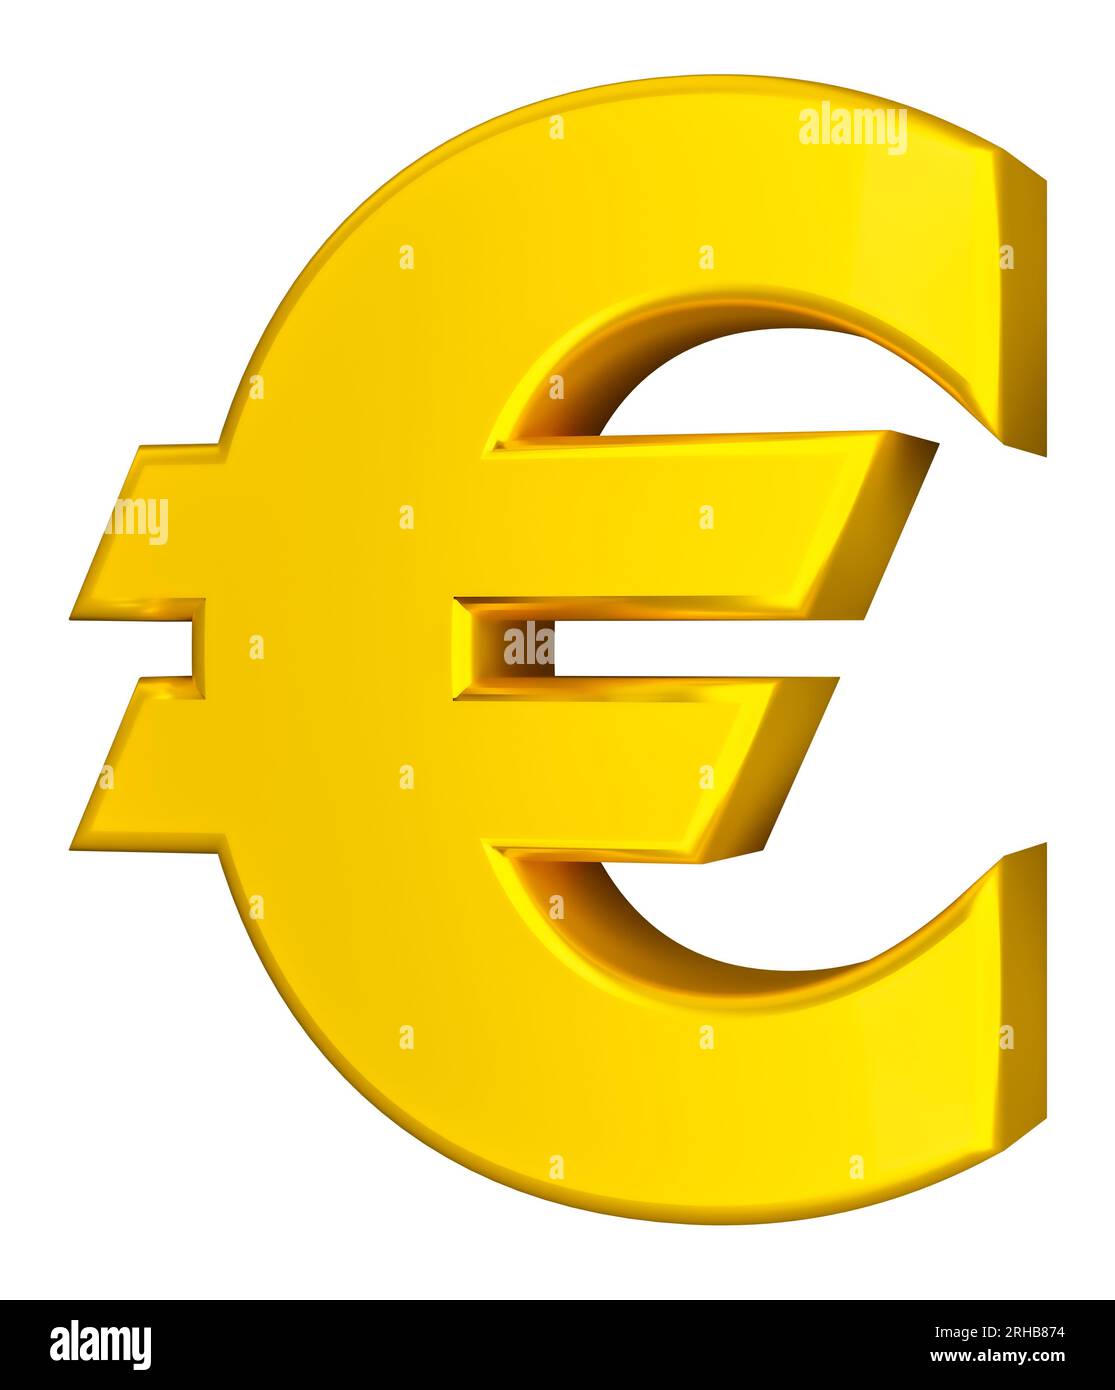 Simbolo finanziario e commerciale. Euro sign. Isolato su sfondo bianco Foto Stock